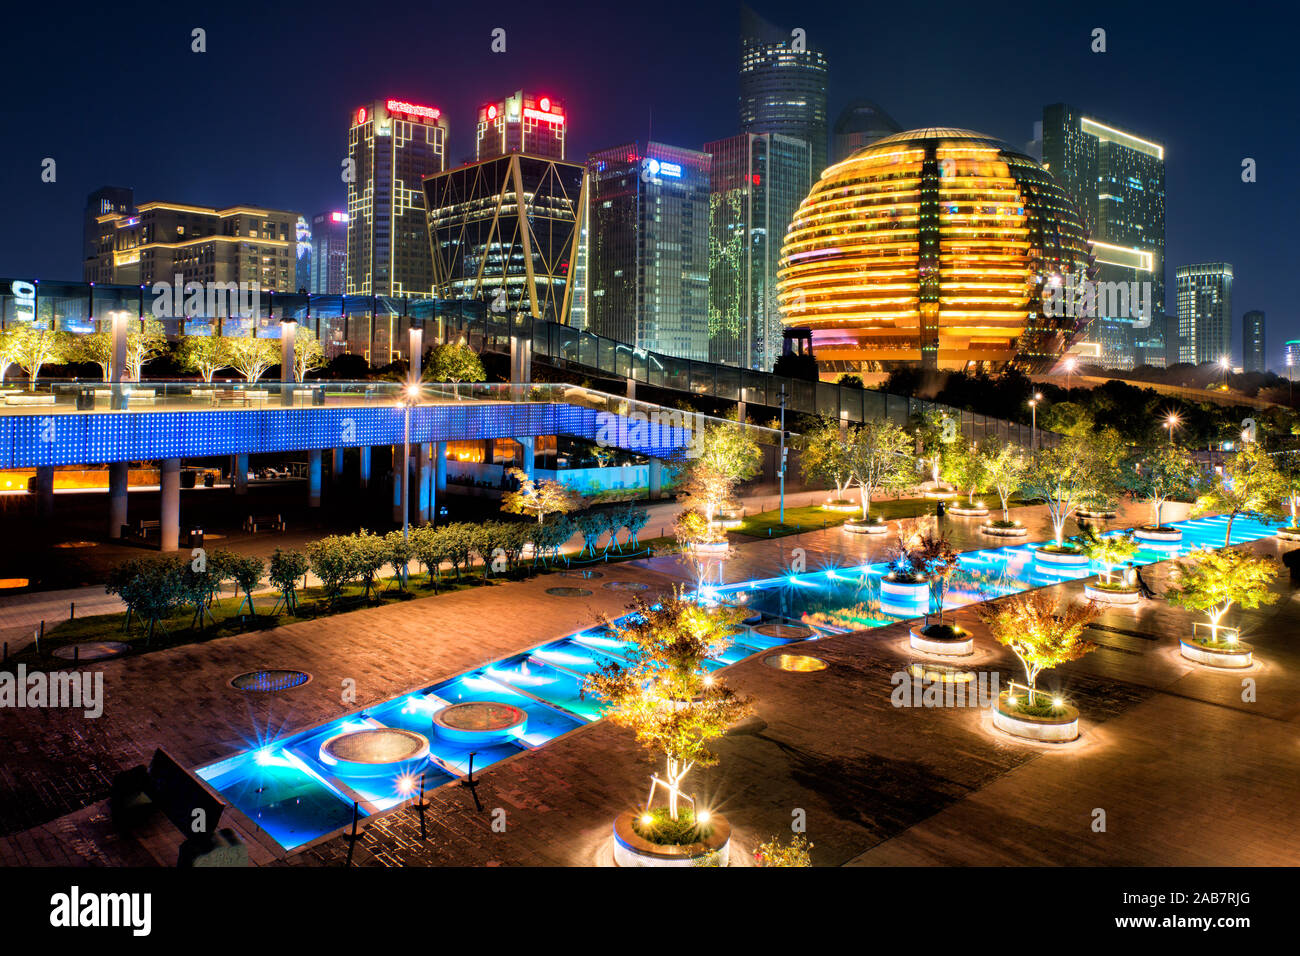 Night view of Qianjiang New Town, Hangzhou, Zhejiang, China Stock Photo